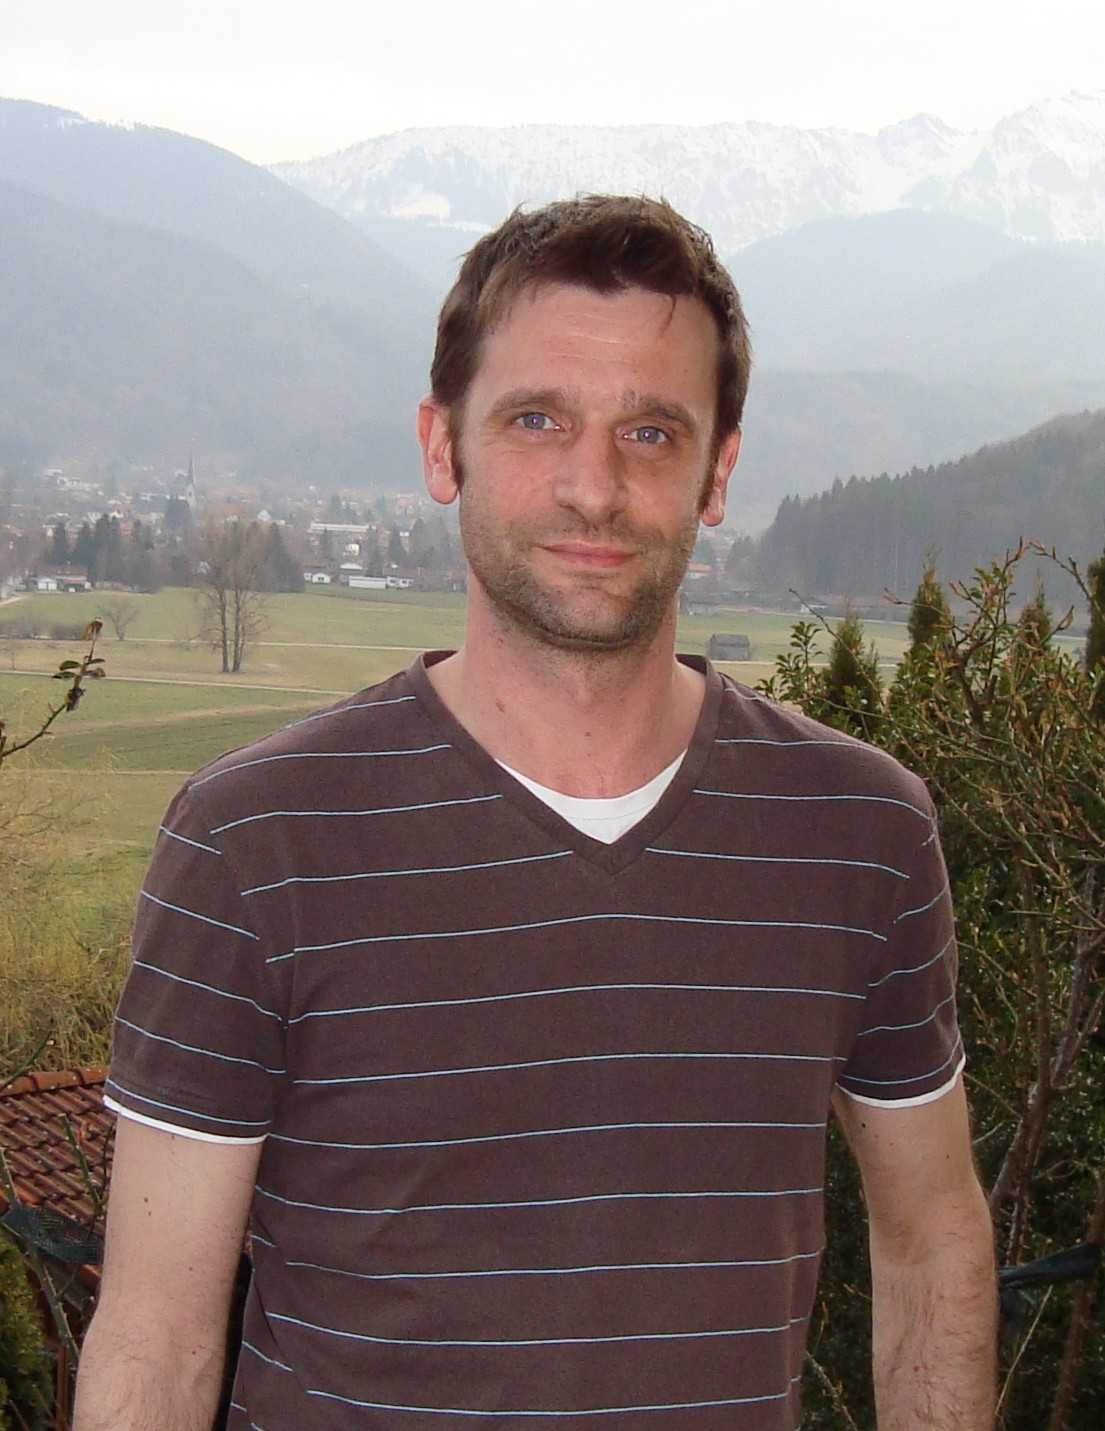 Dr. Christoph Jäger